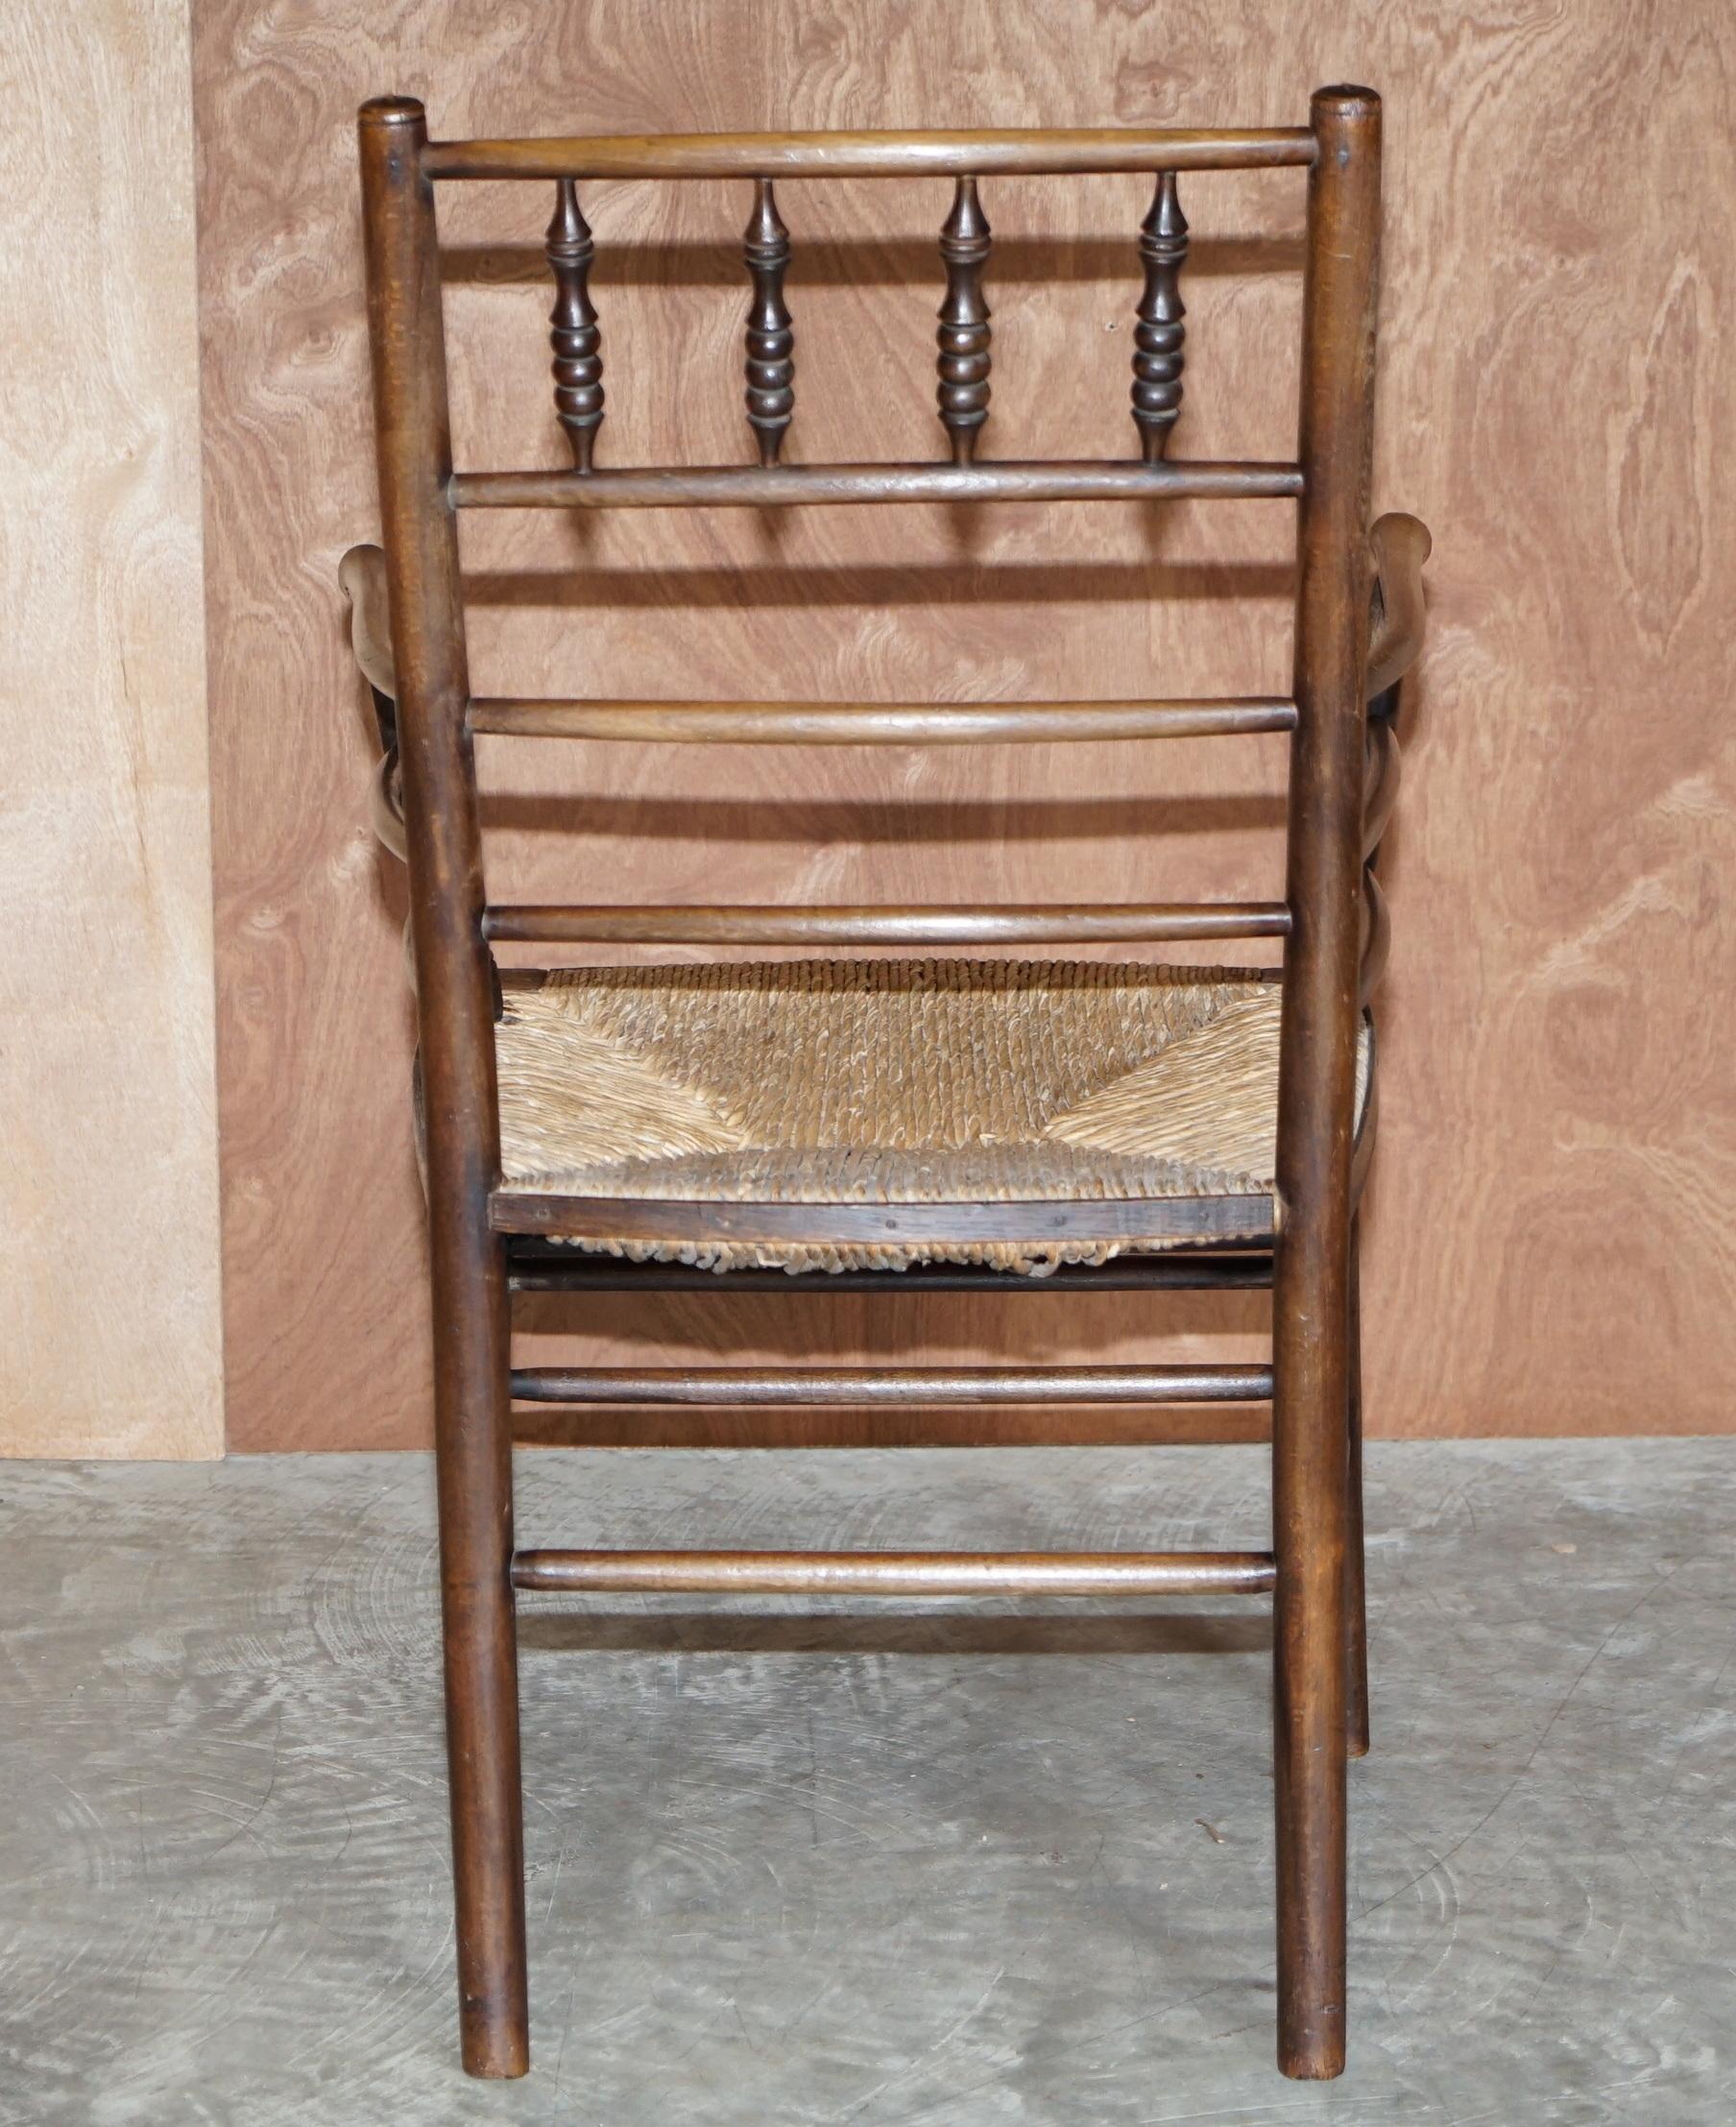 Antique Original William Morris Sussex Rush Seat Armchair Seen in the V&A Museum 6